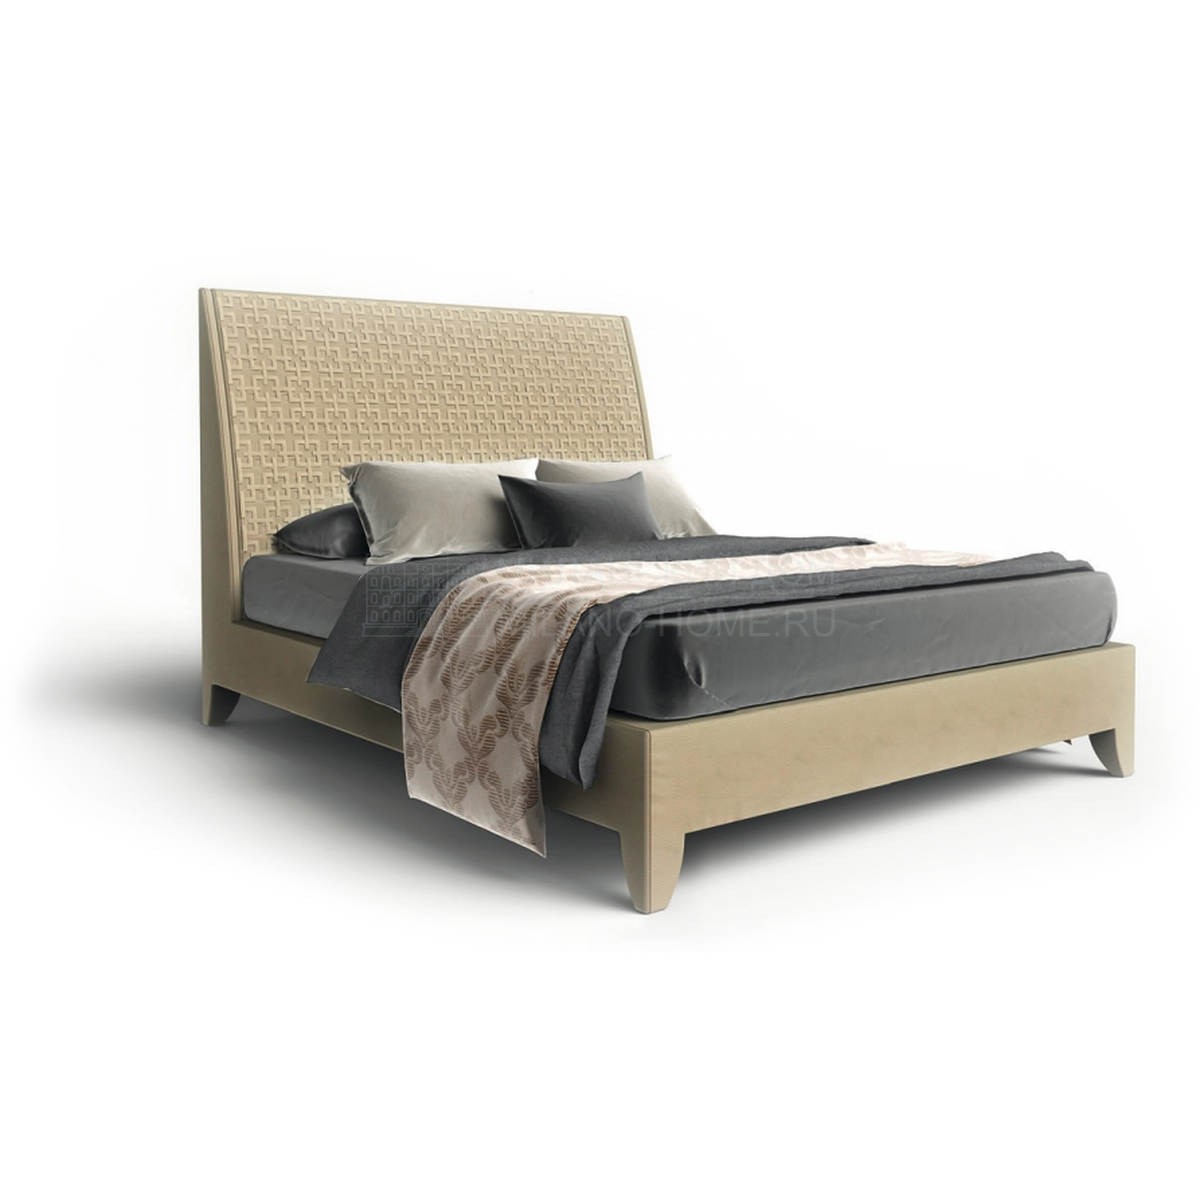 Двуспальная кровать Nolita quilt bed из Италии фабрики ASNAGHI / INEDITO